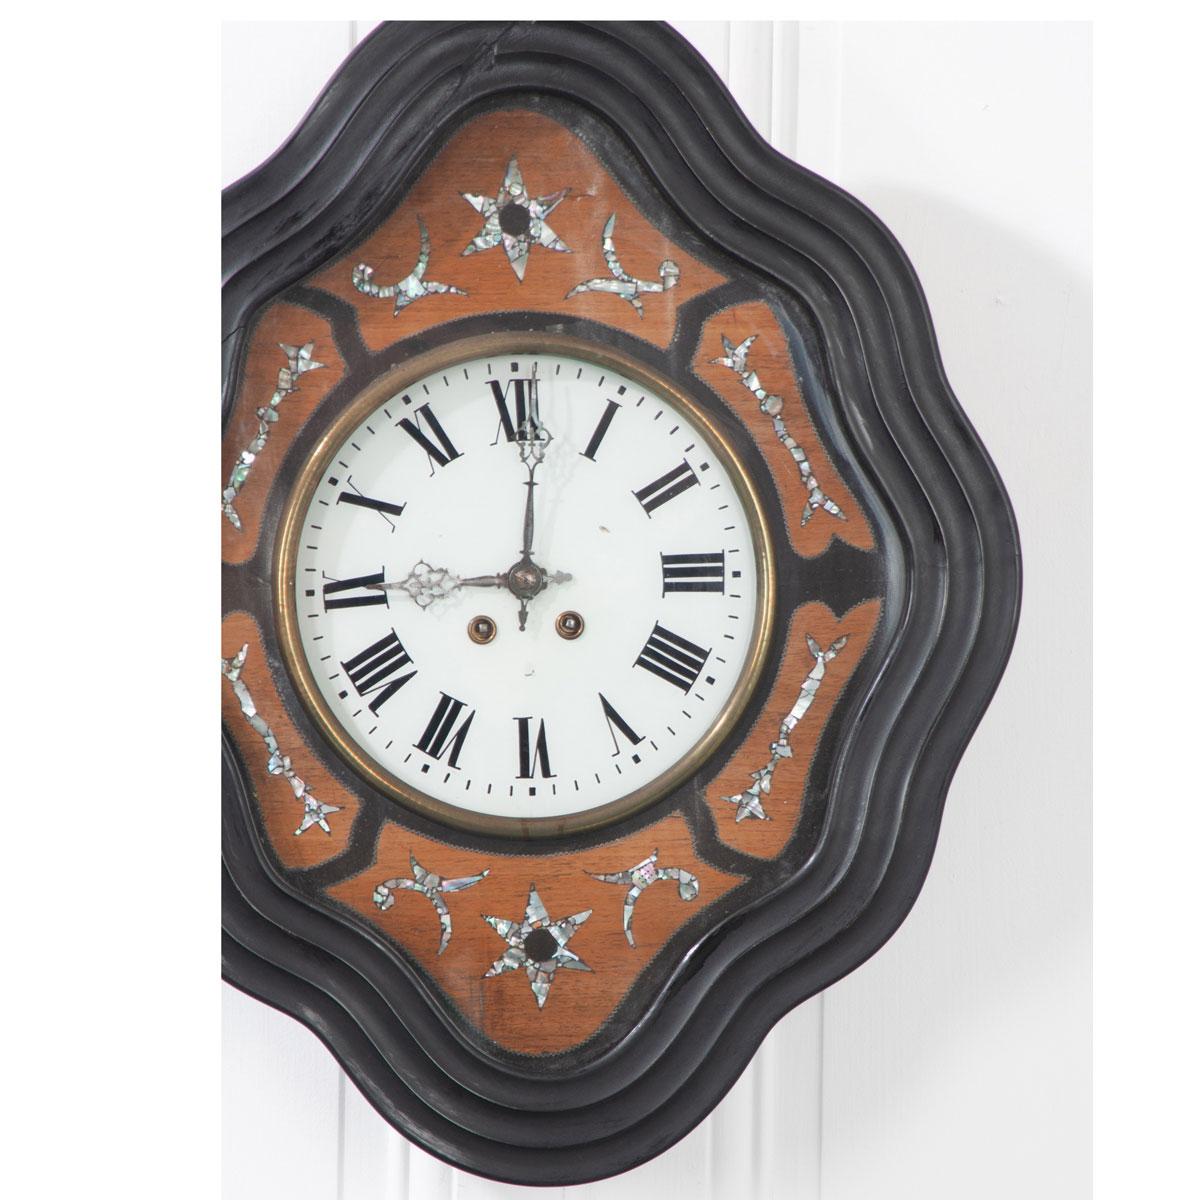 Superbe horloge murale du XIXe siècle, en forme de diamant, avec un cadre d'horloge ondulé en bois peint en ébène. Des motifs astraux et filigranes en nacre sont incrustés dans de l'acajou teinté différemment et de la nacre brillante, entourant le